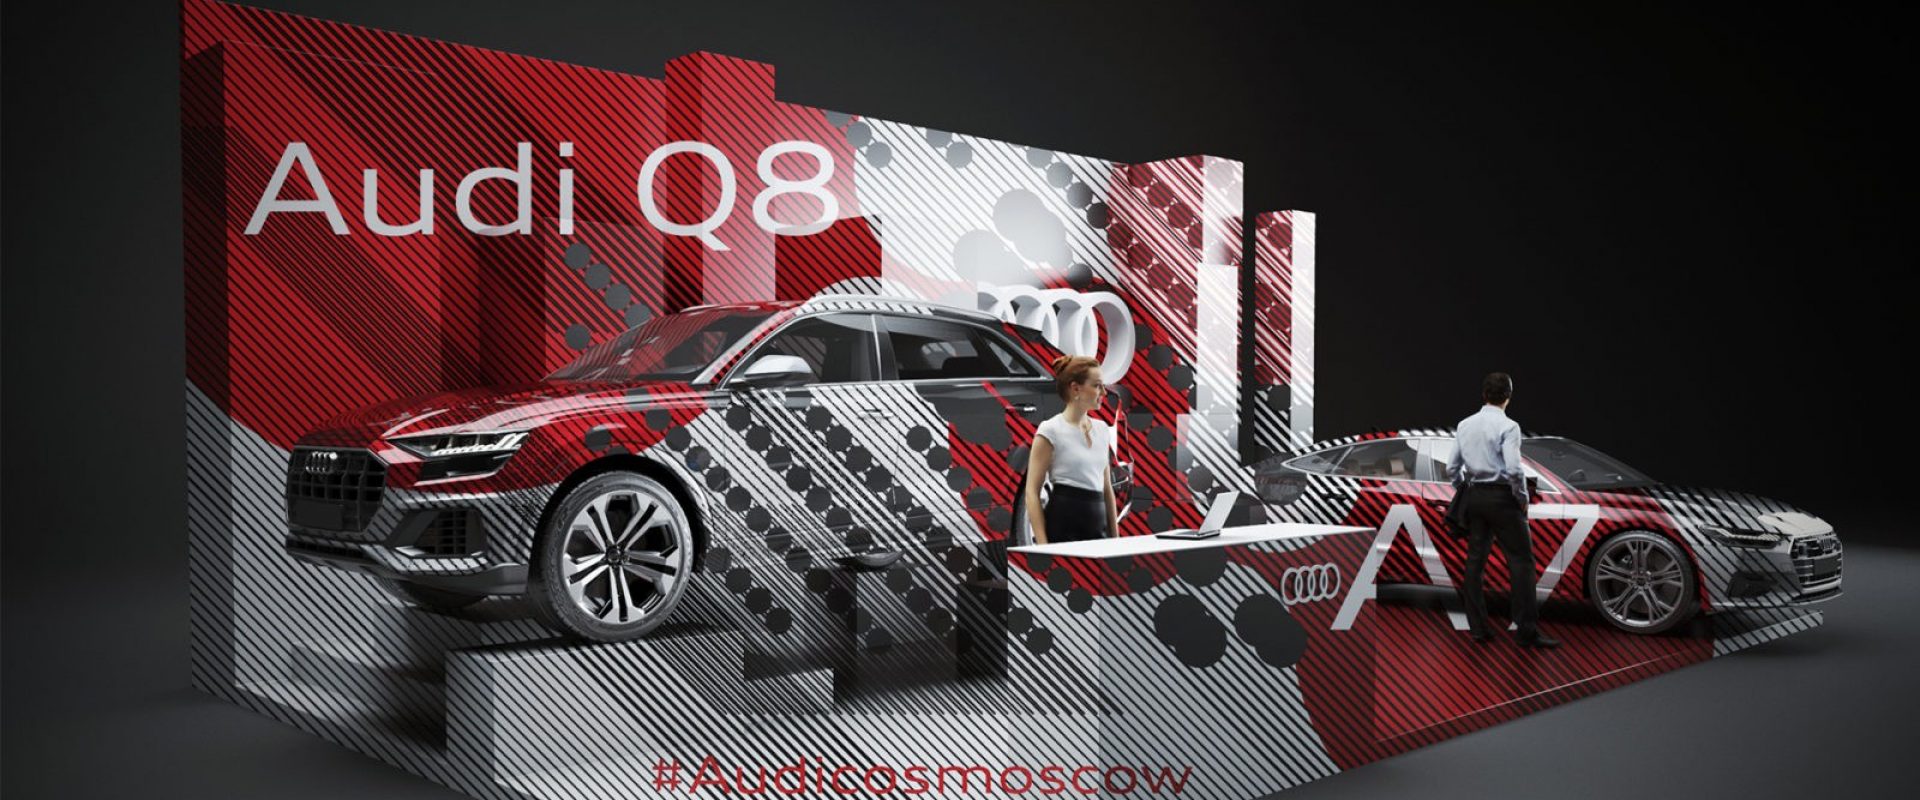 Audi SGED